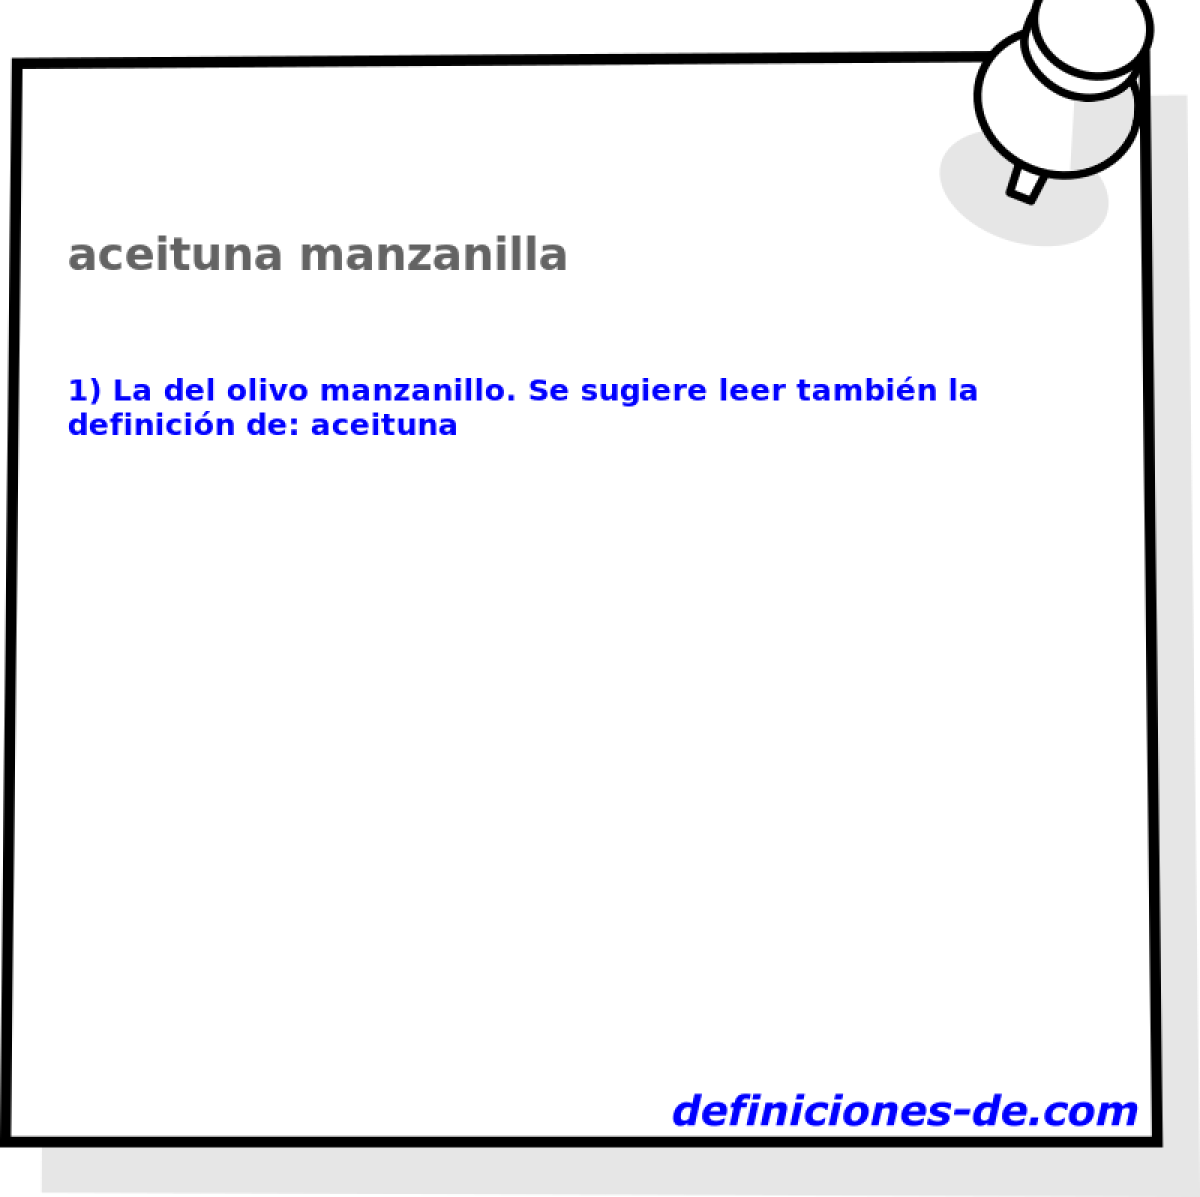 aceituna manzanilla 